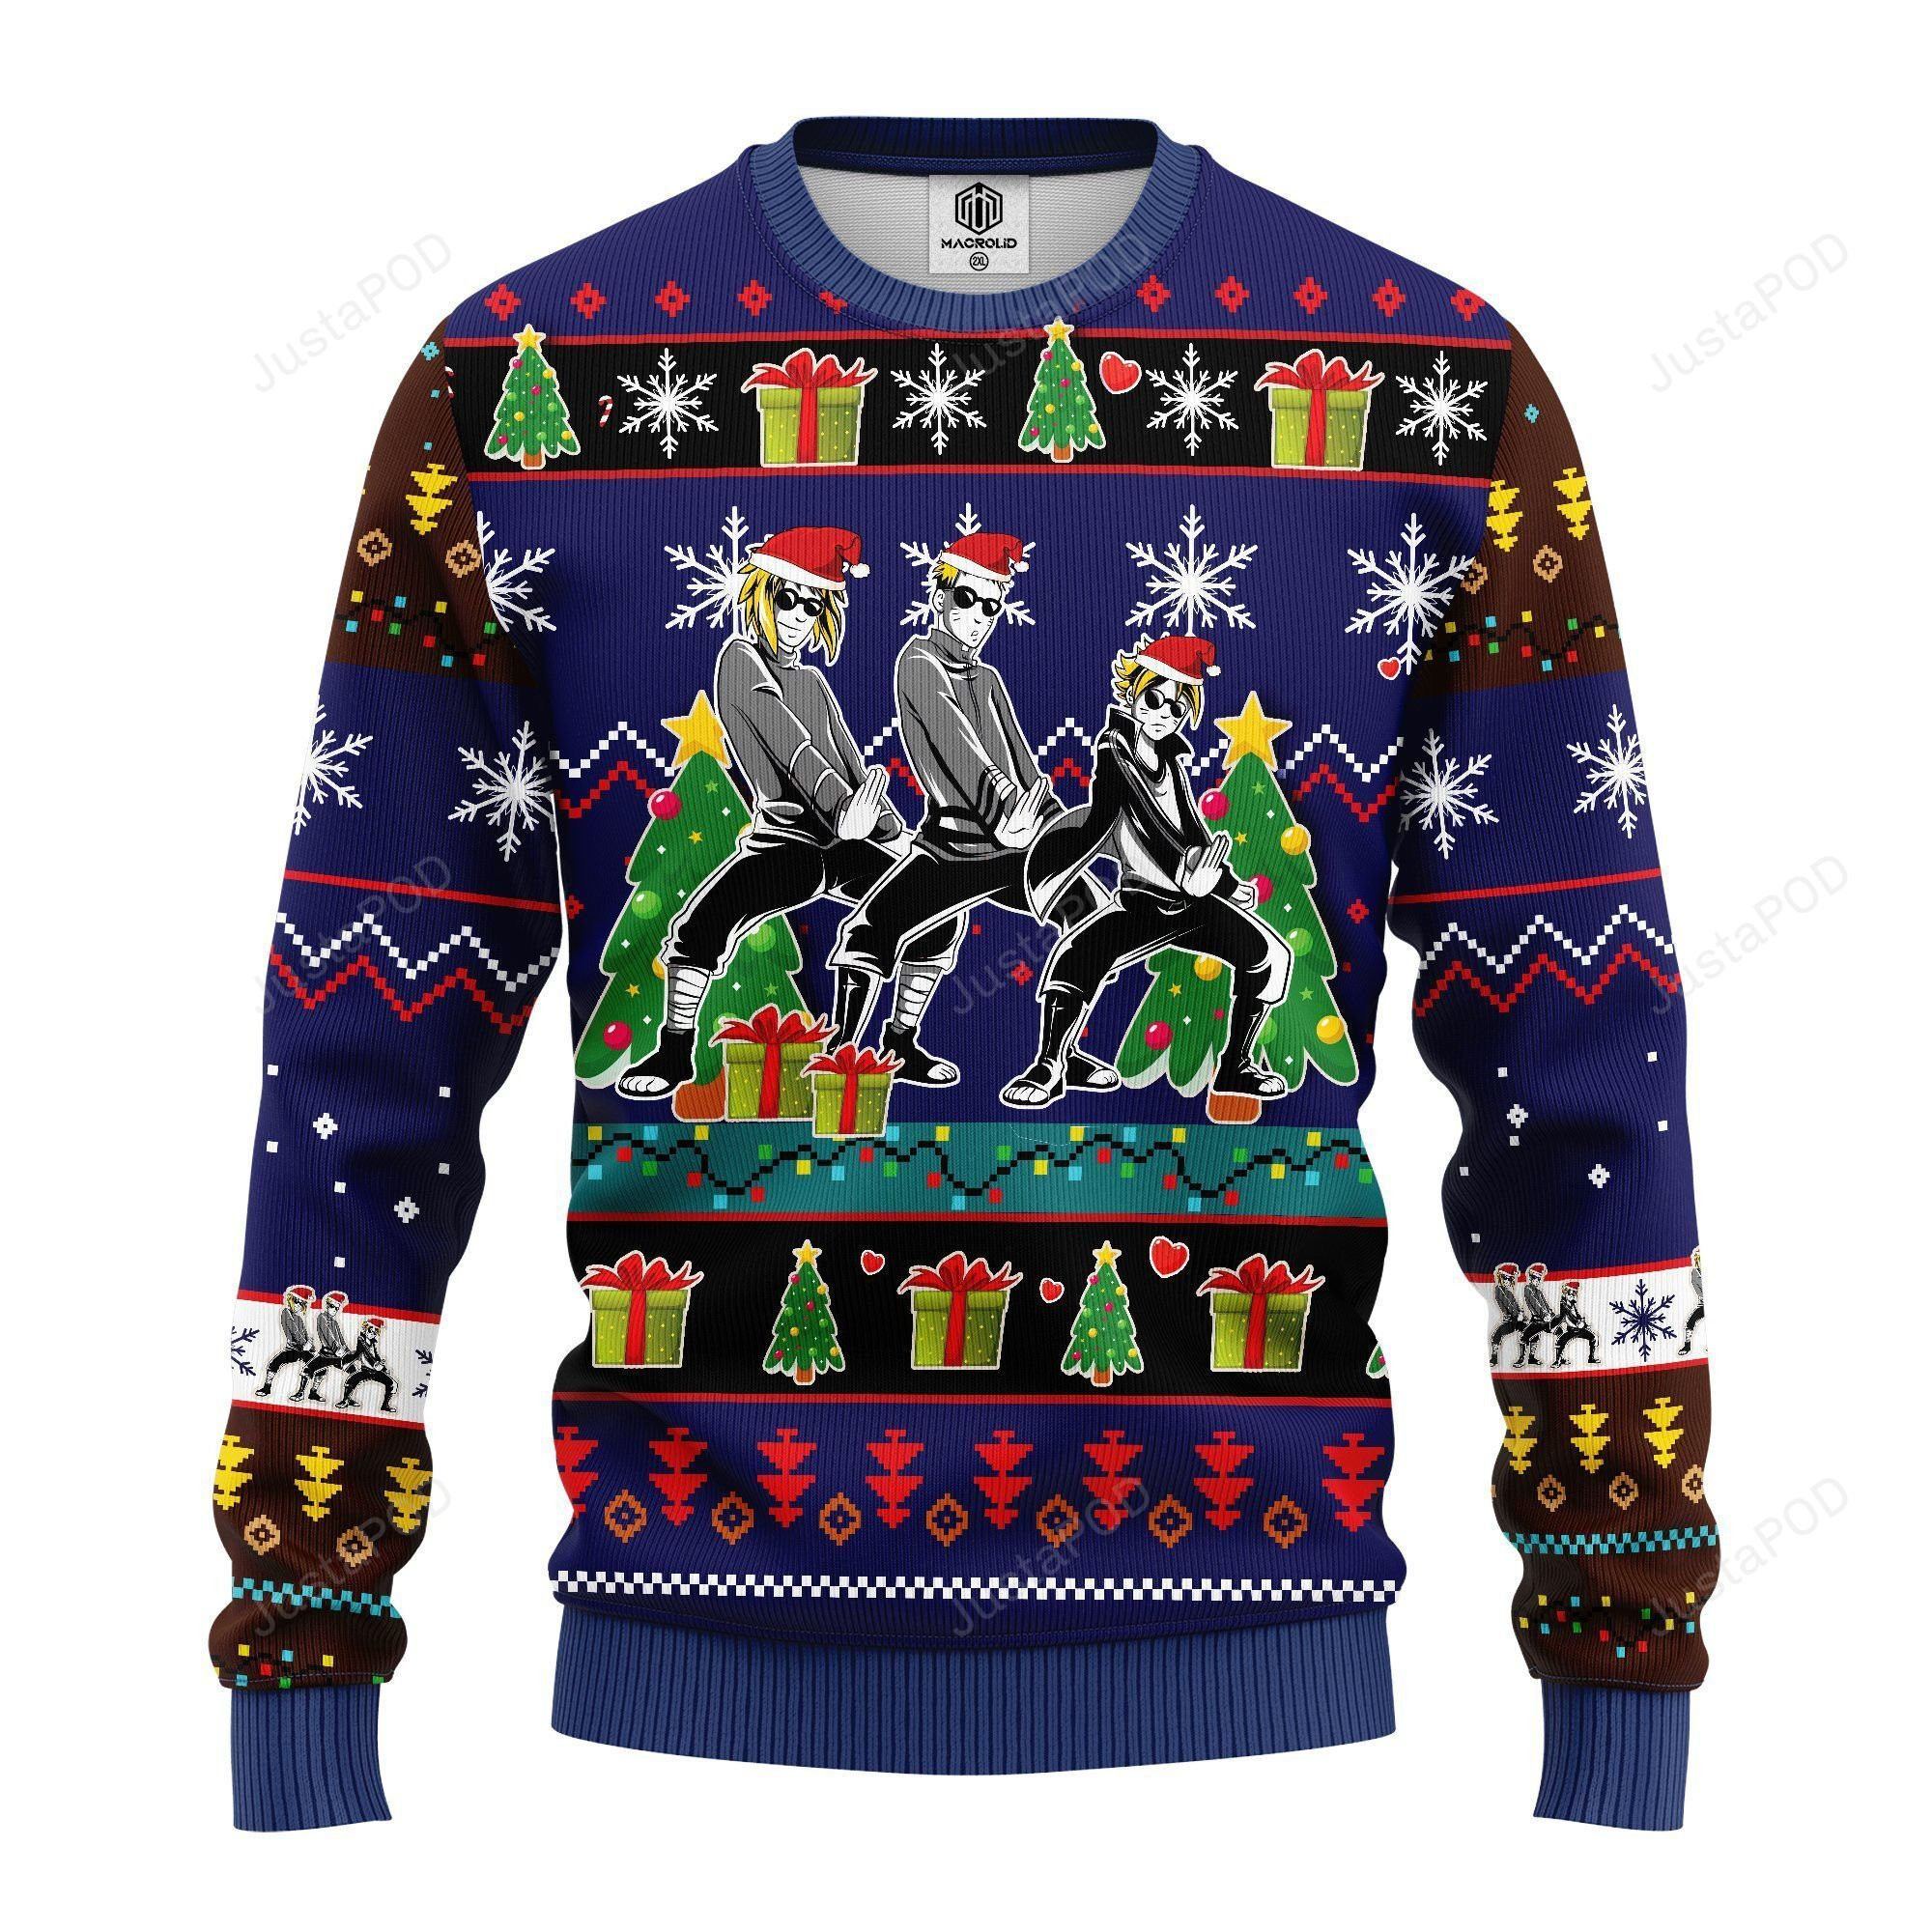 Naruto Boruto Minato Funny Ugly Christmas Sweater All Over Print